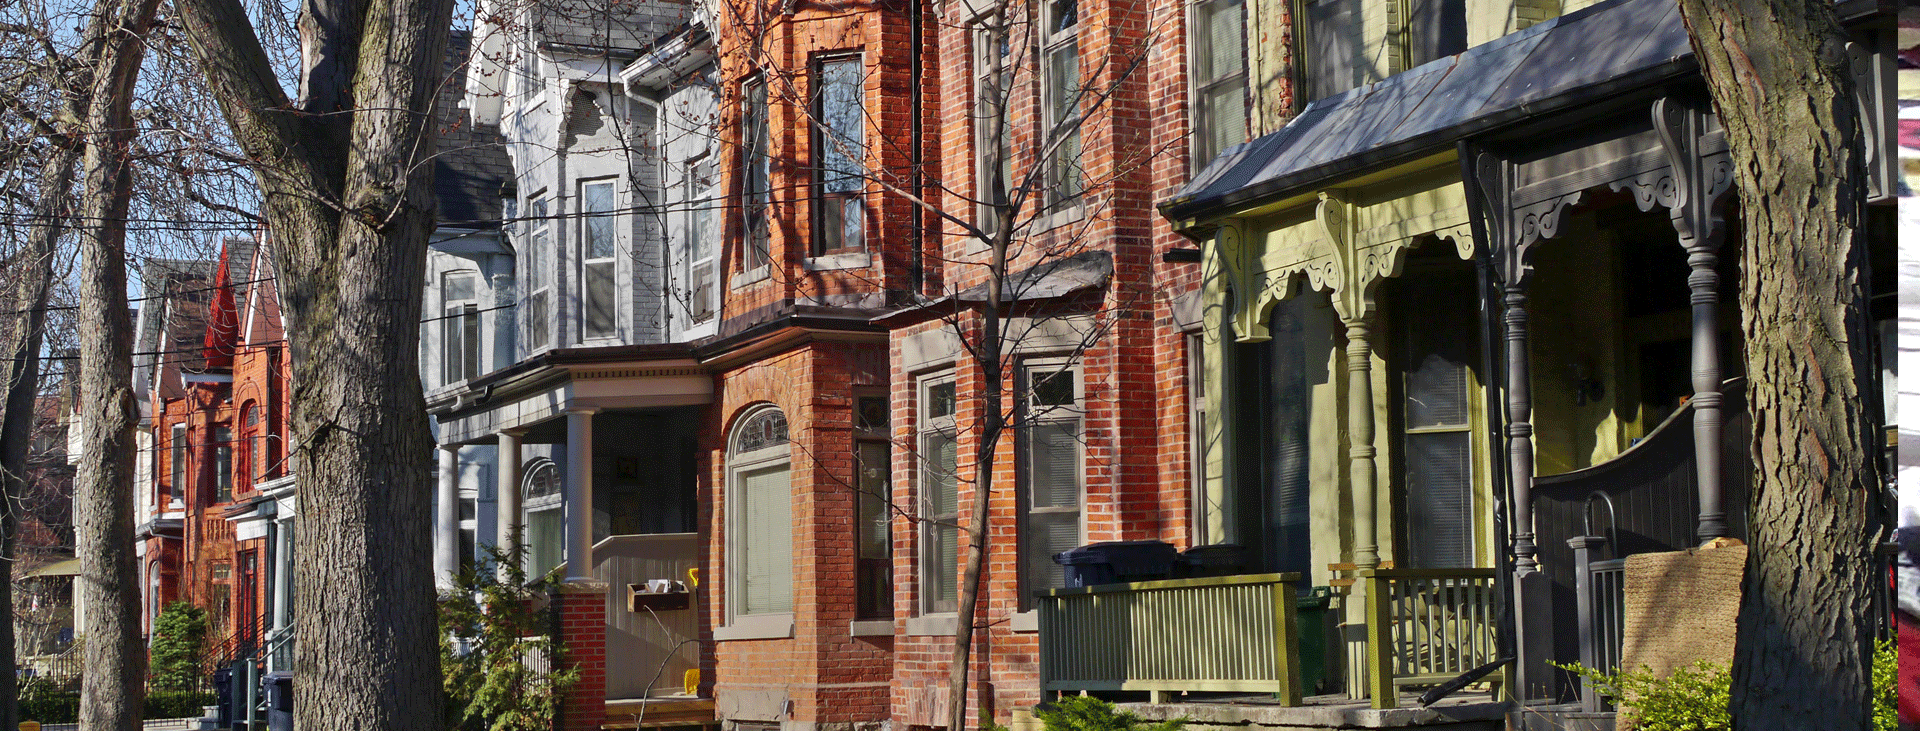 A row of brick Toronto houses